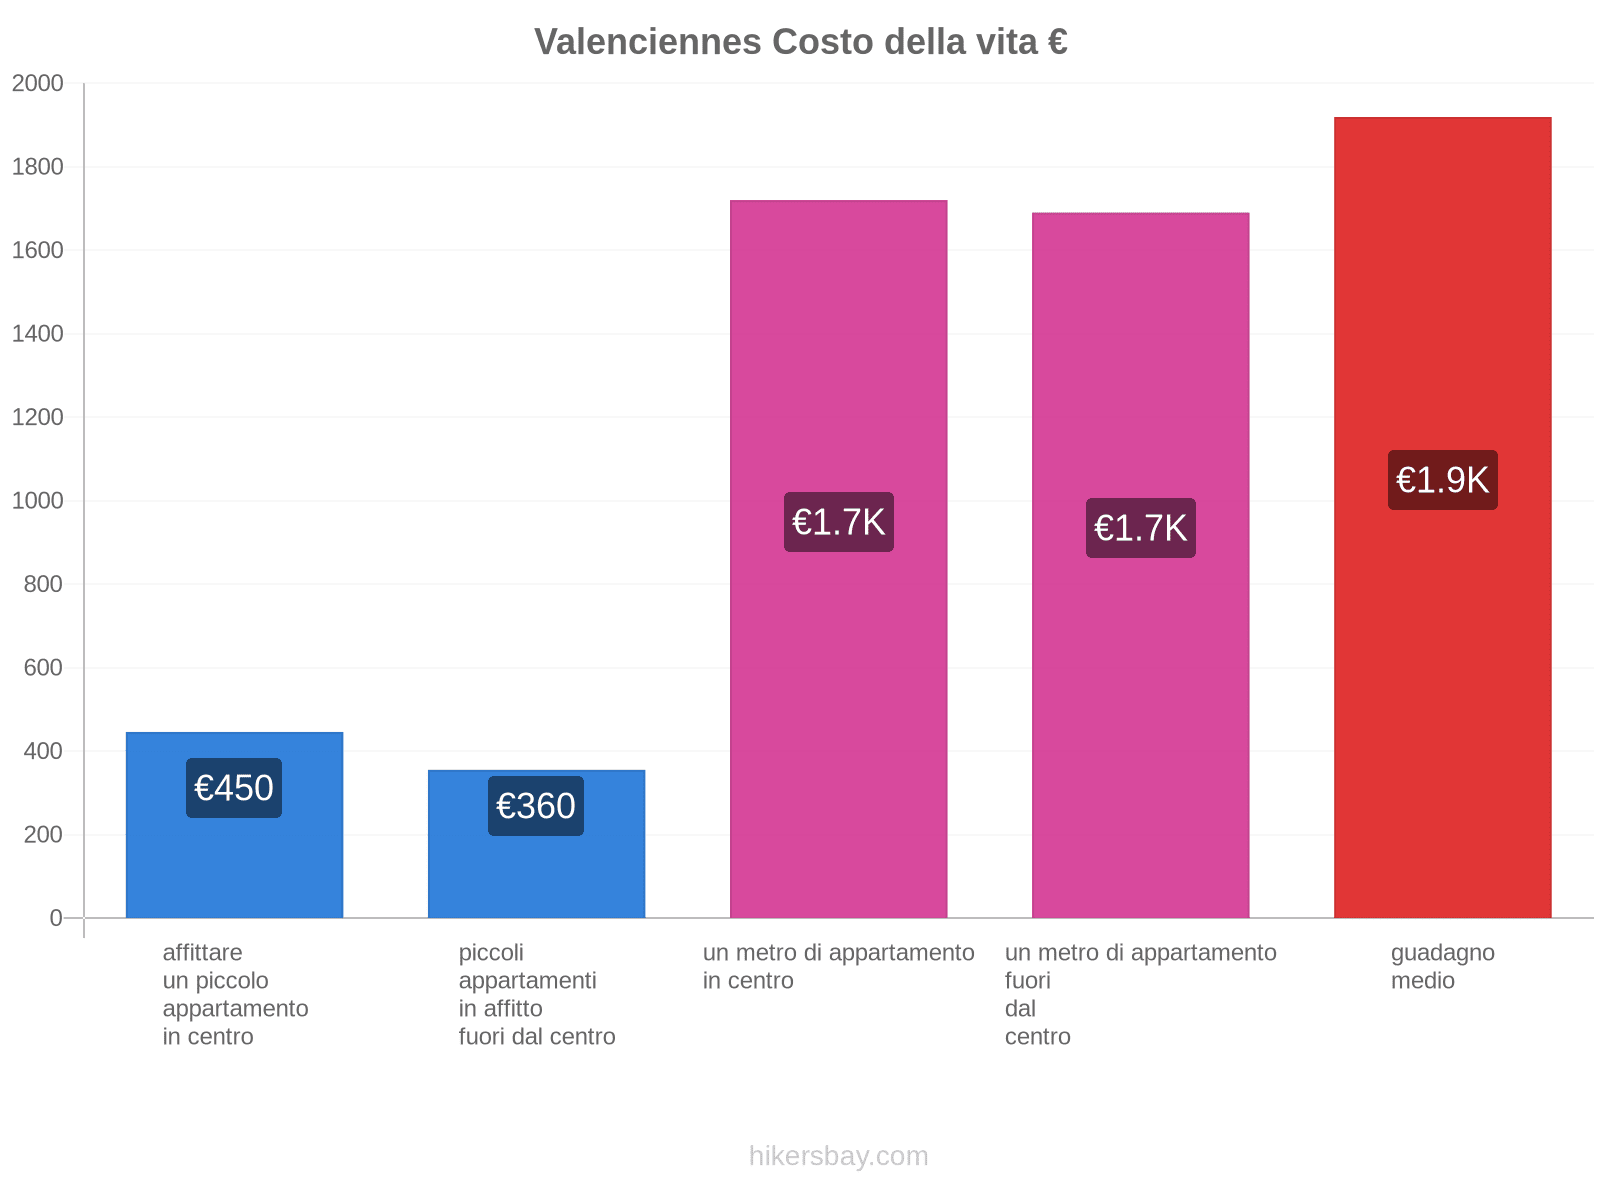 Valenciennes costo della vita hikersbay.com